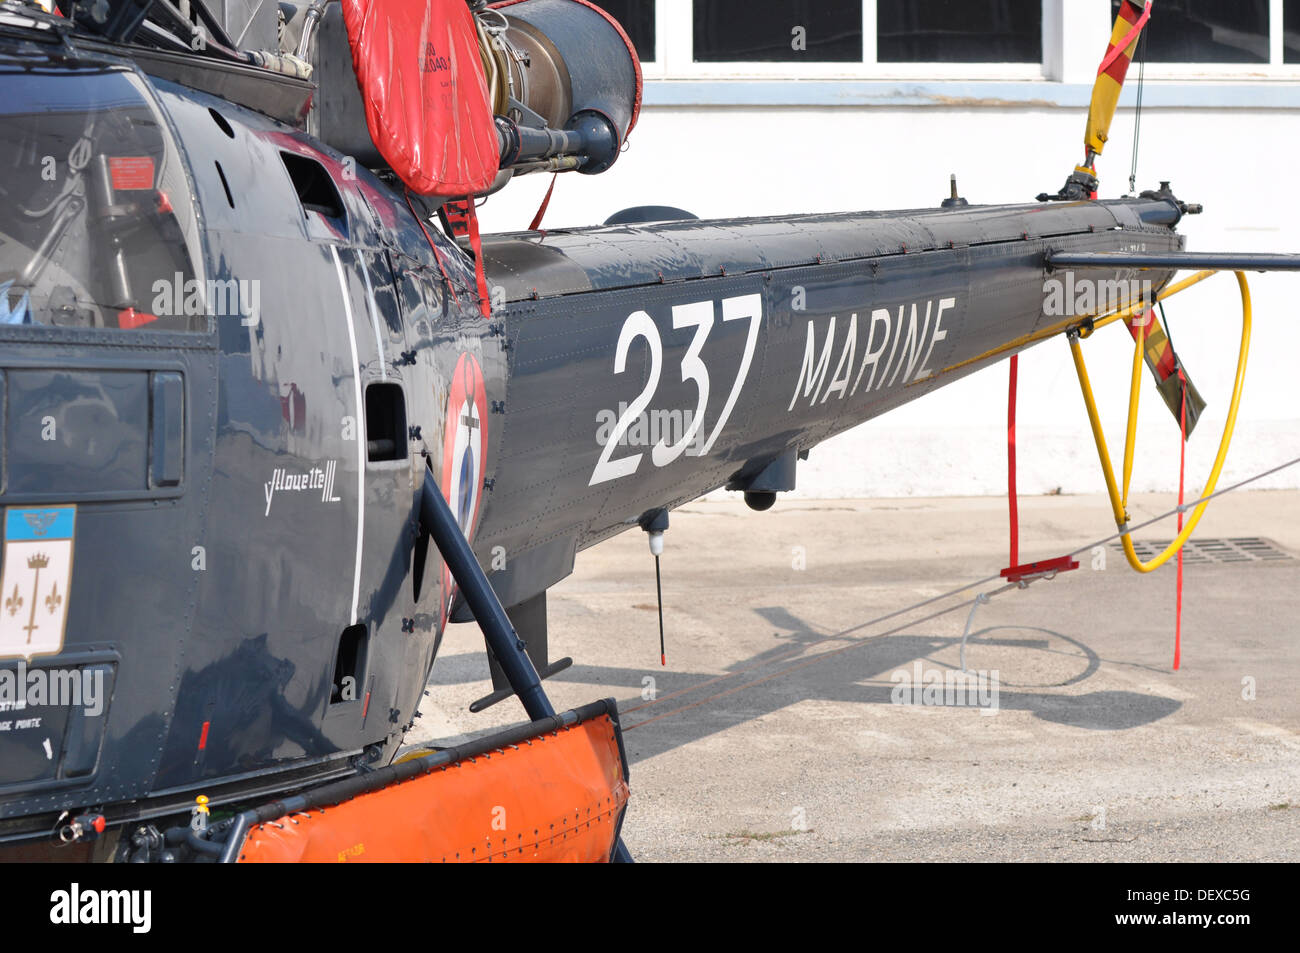 3 Alouette III hélicoptères Eurocopter EADS Airbus de l'armée, journée portes ouvertes le jour de la famille ' ' sur le site de production à Marignane, France Banque D'Images